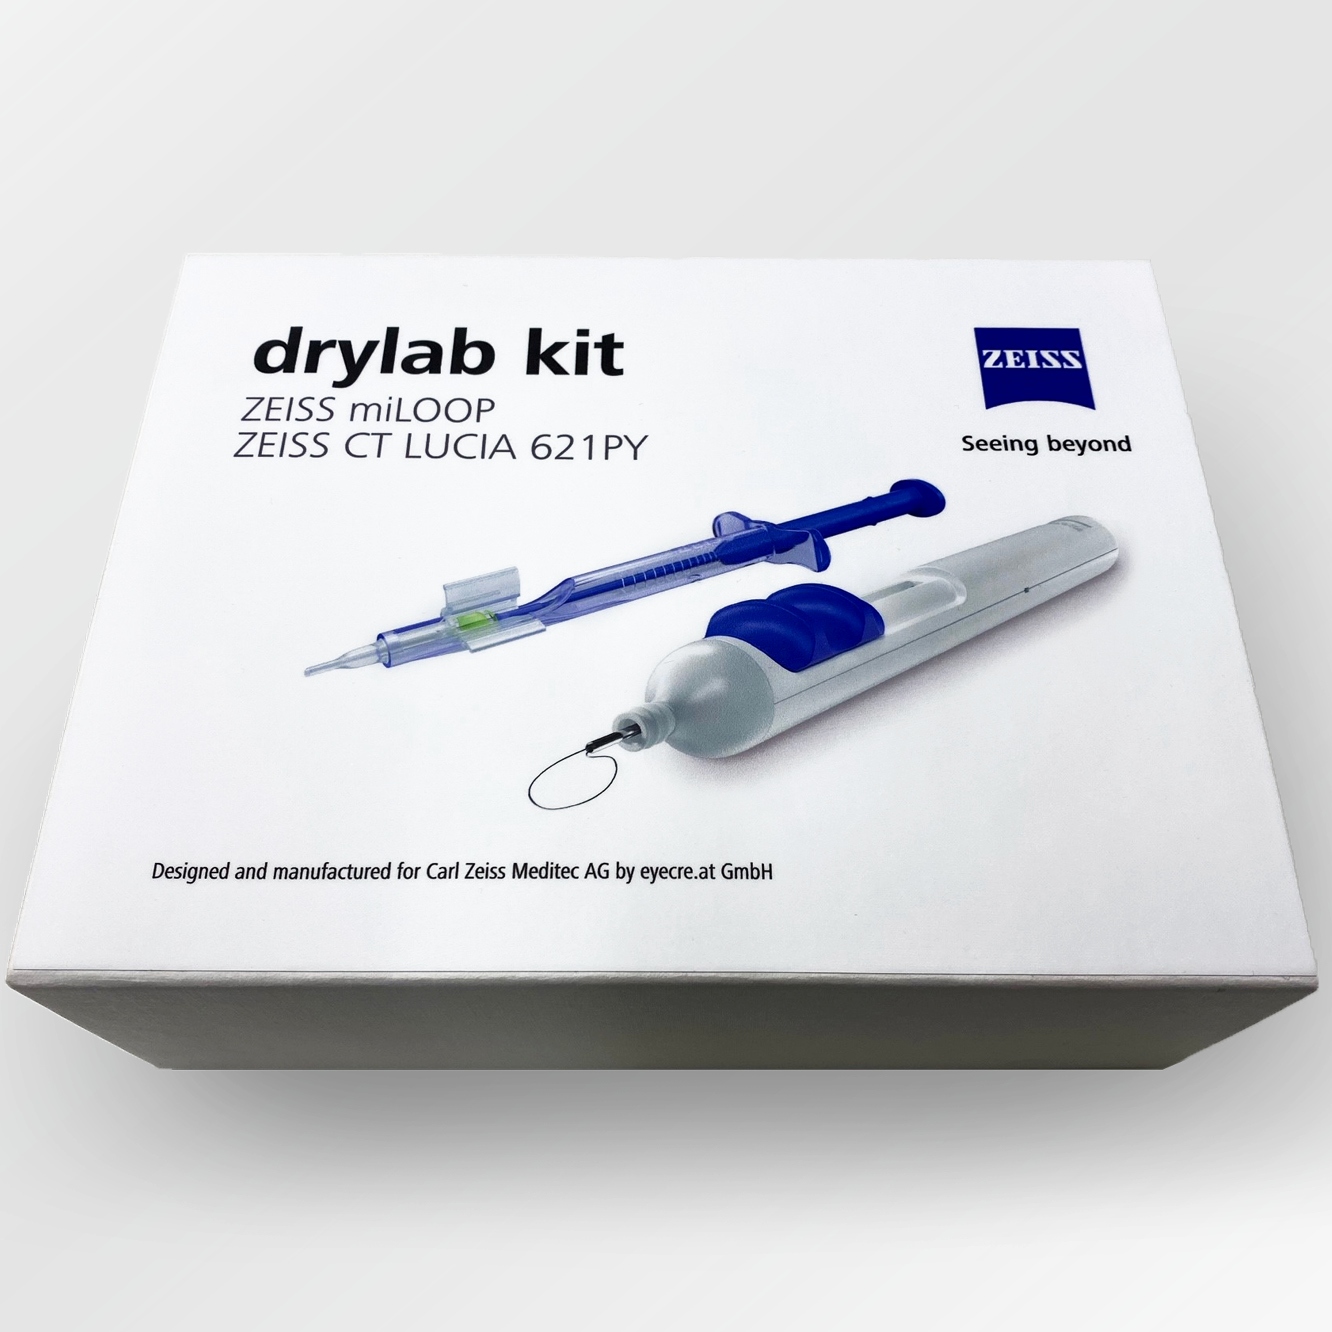 drylab kit